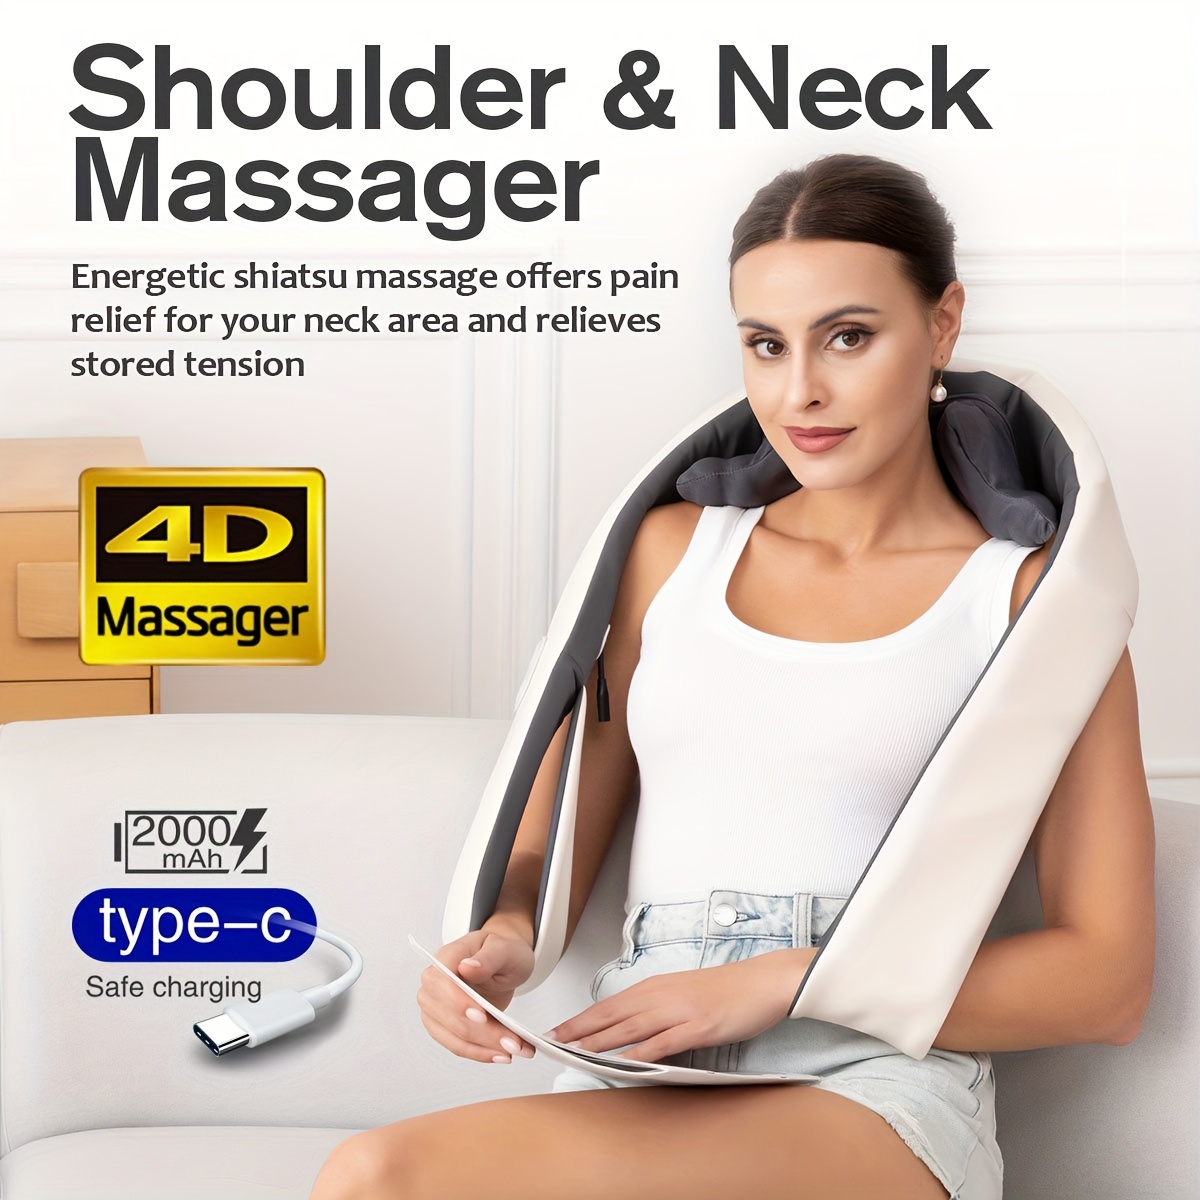 Neck Massager Neck Shoulder Waist Leg Relax Massager - Temu